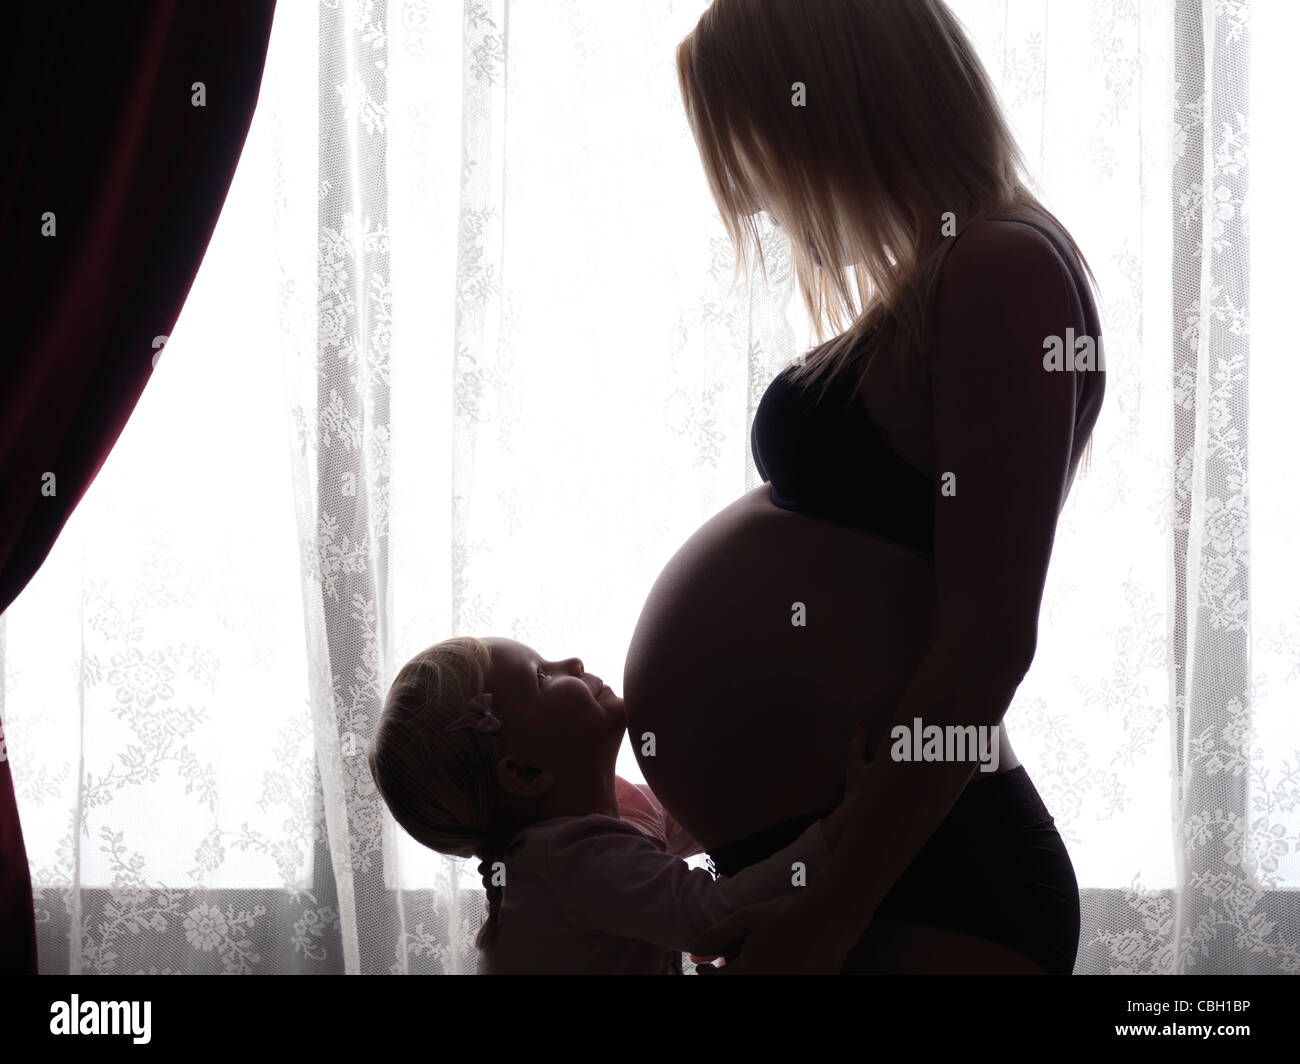 Felice piccola figlia abbracciando la sua gravidanza madre della pancia in luce davanti a una finestra Foto Stock